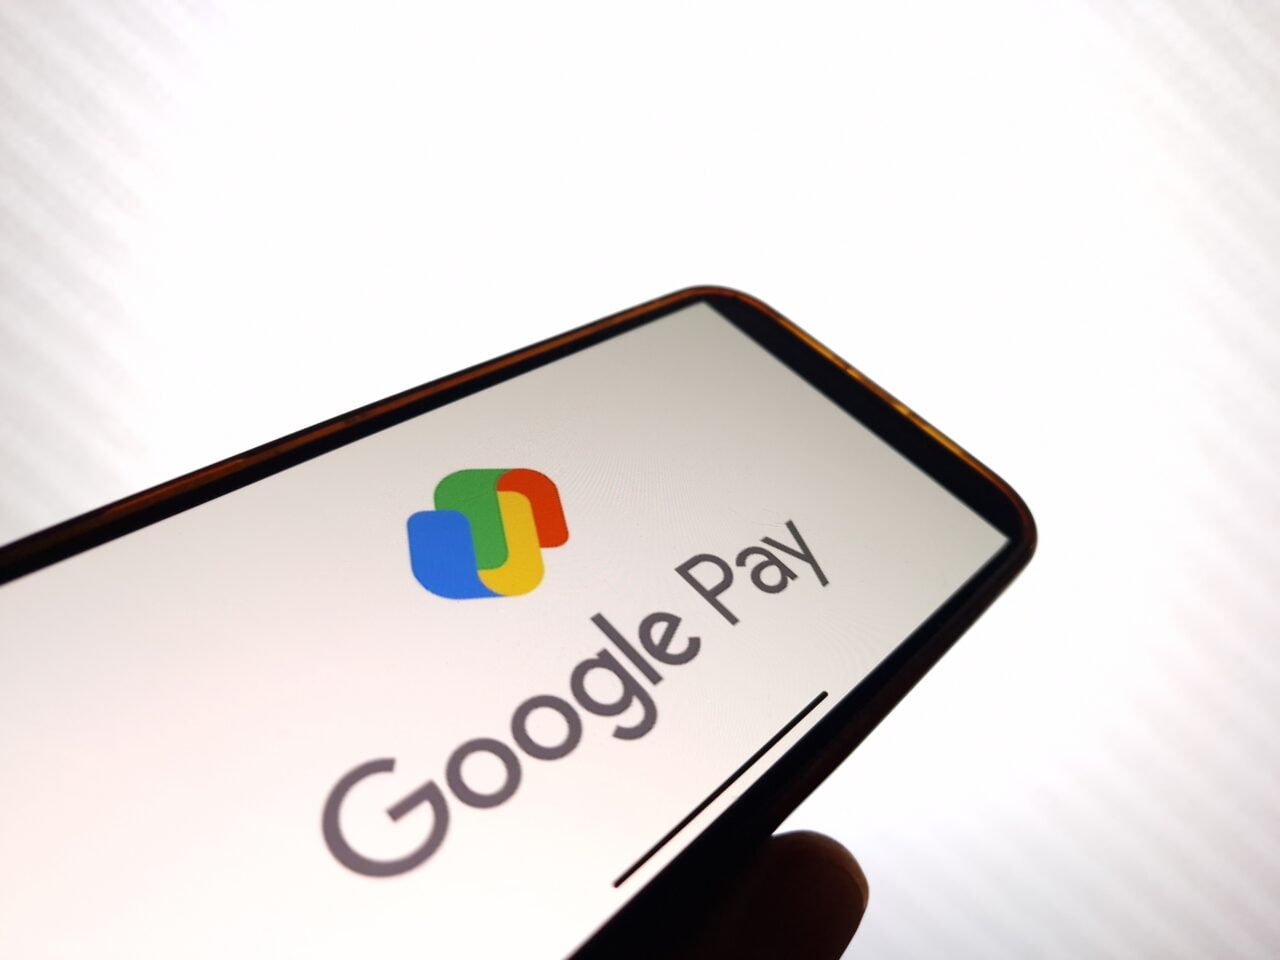 funkcje Google Pay, logo na ekranie smartfona.